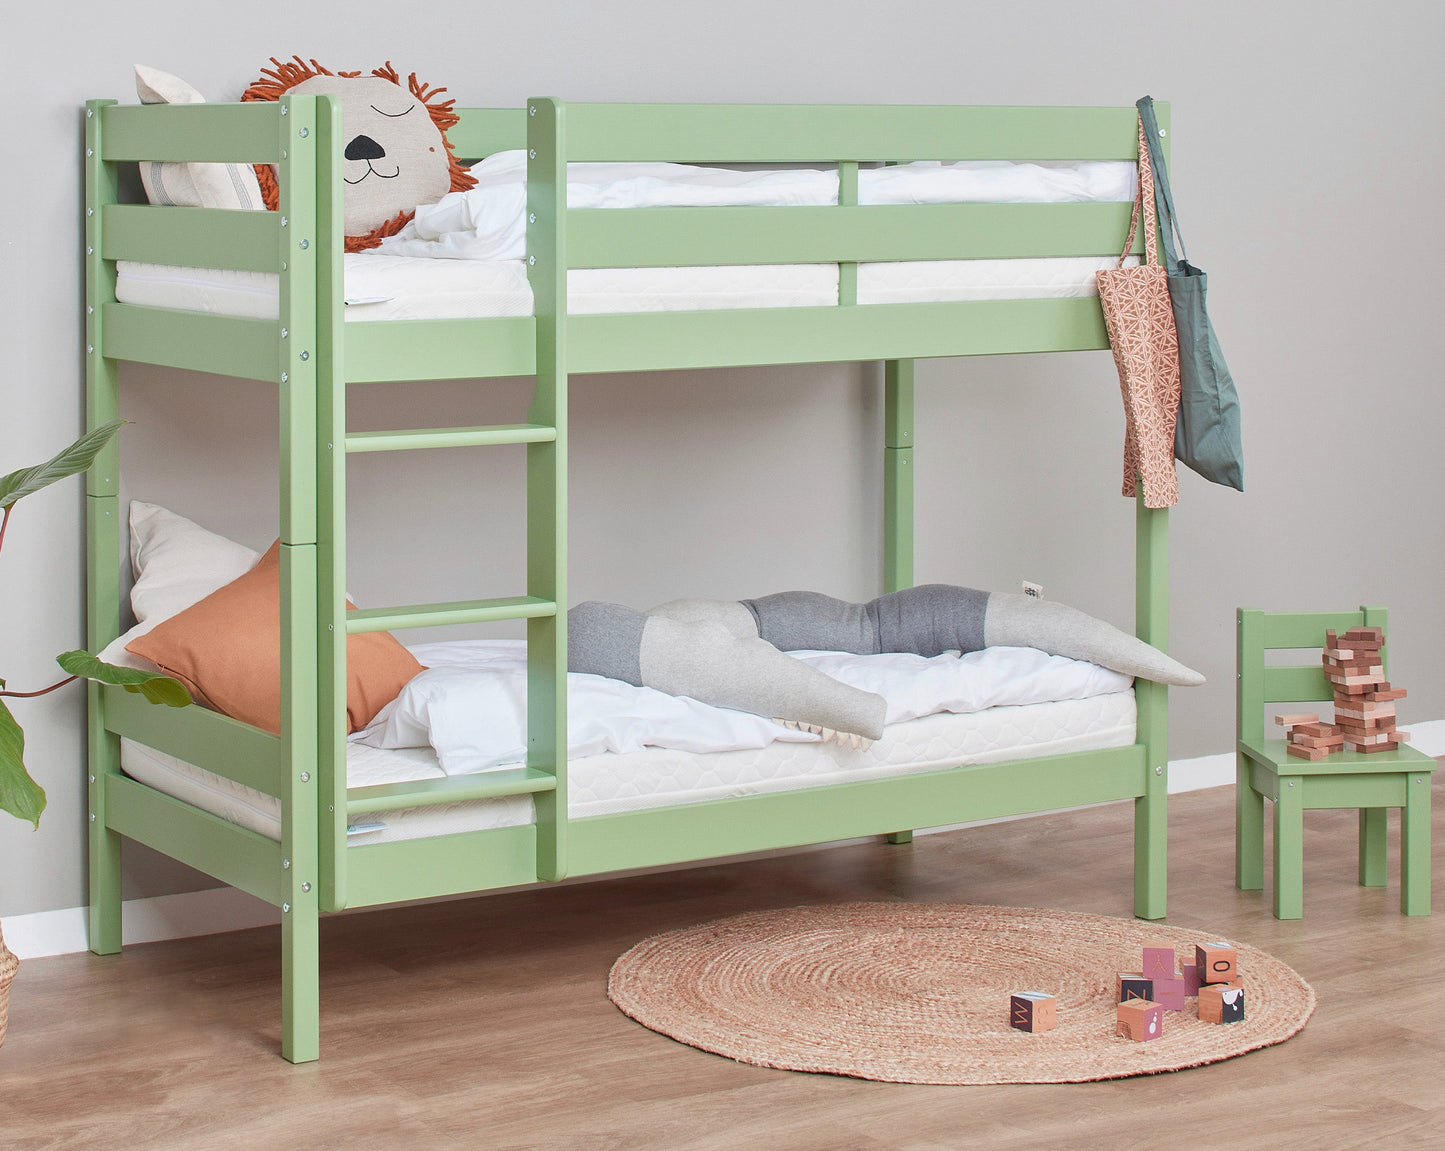 ECO Comfort - Bunk bed - 70x160 cm